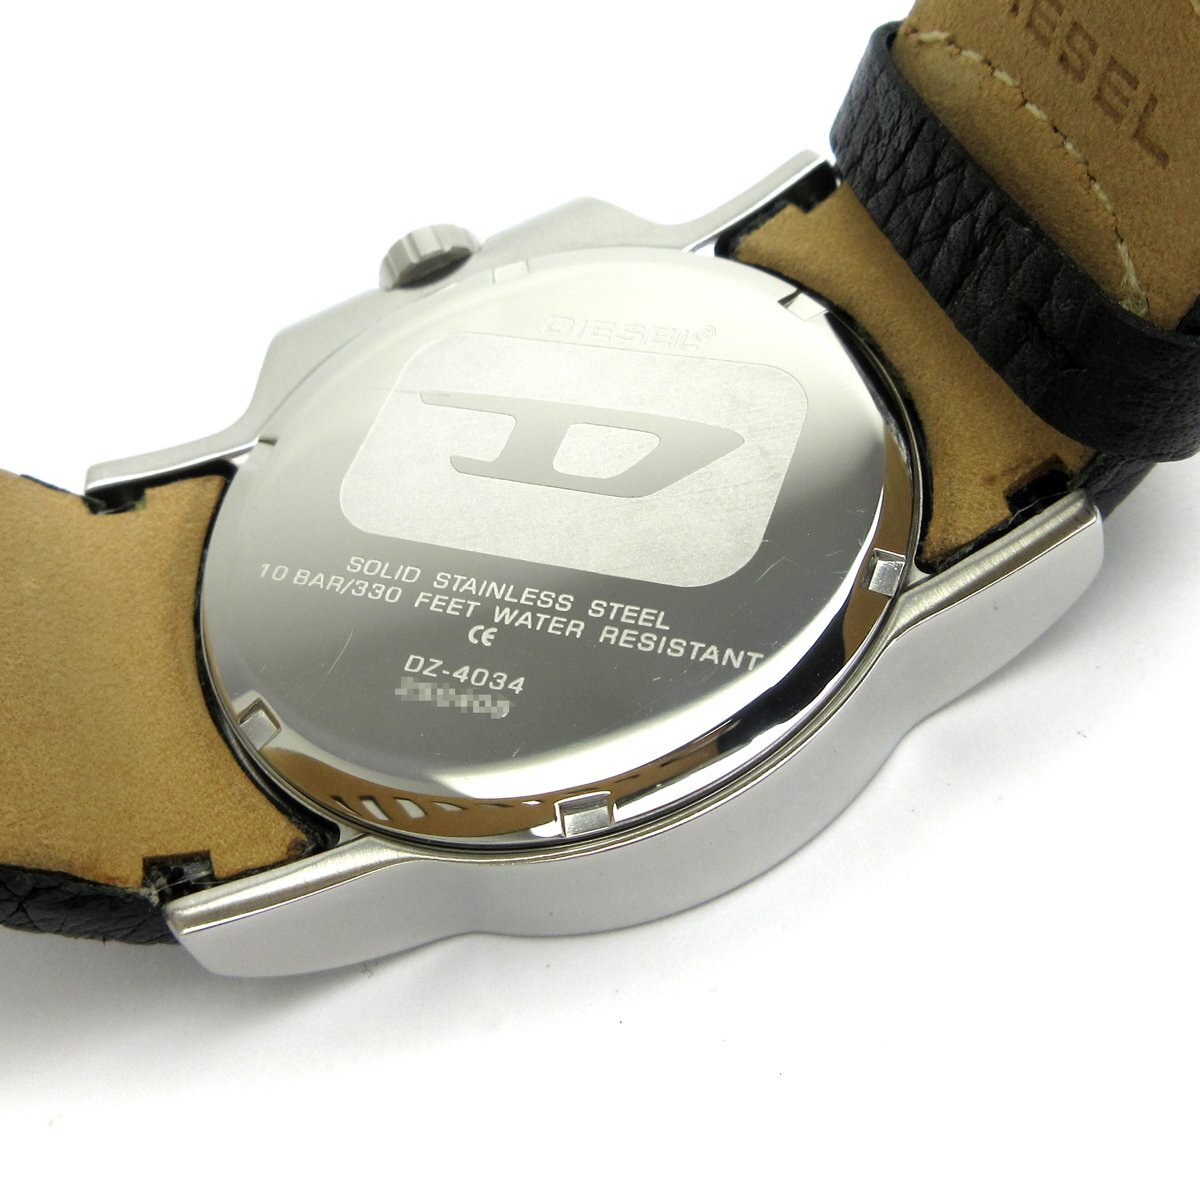  diesel day date men's leather belt yellow black DZ4034 clock DIESEL DZ-4034 black yellow quartz box operation goods 